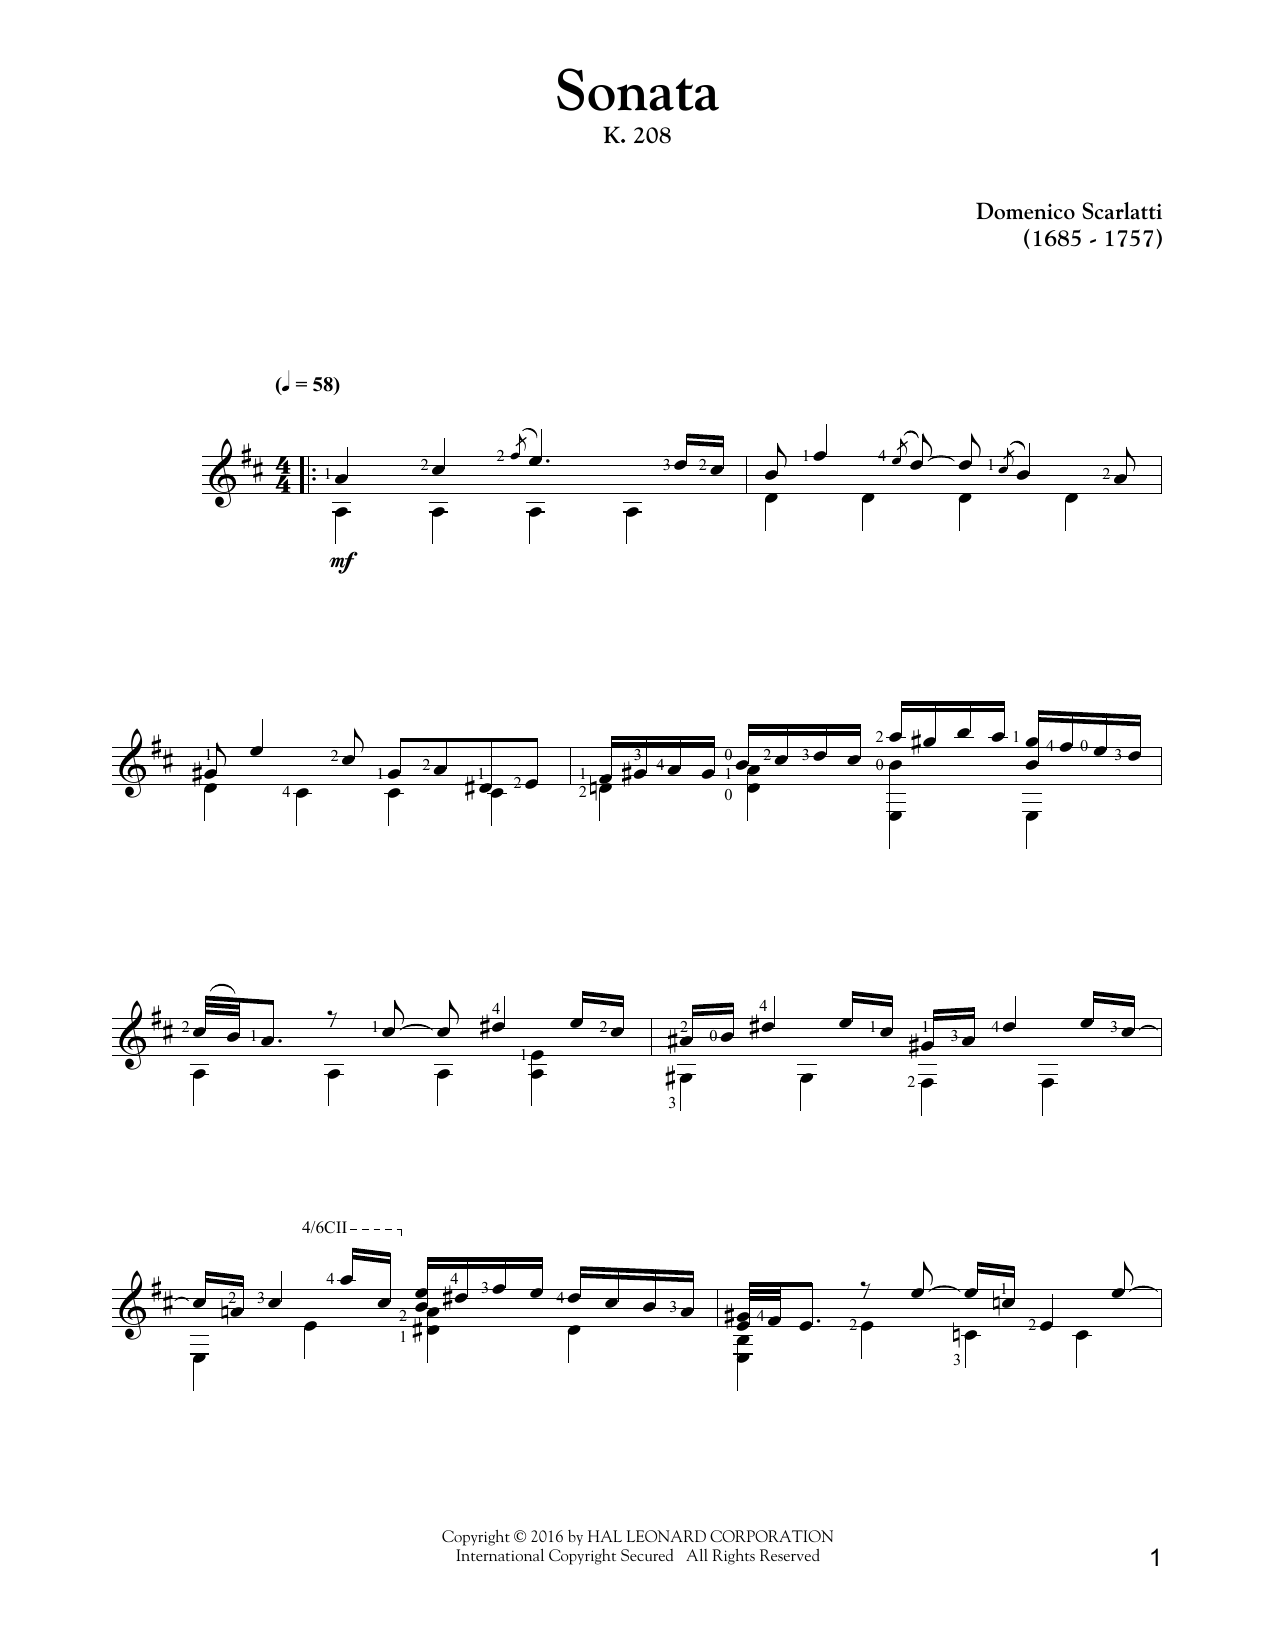 Download Domenico Scarlatti Sonata K.208 Sheet Music